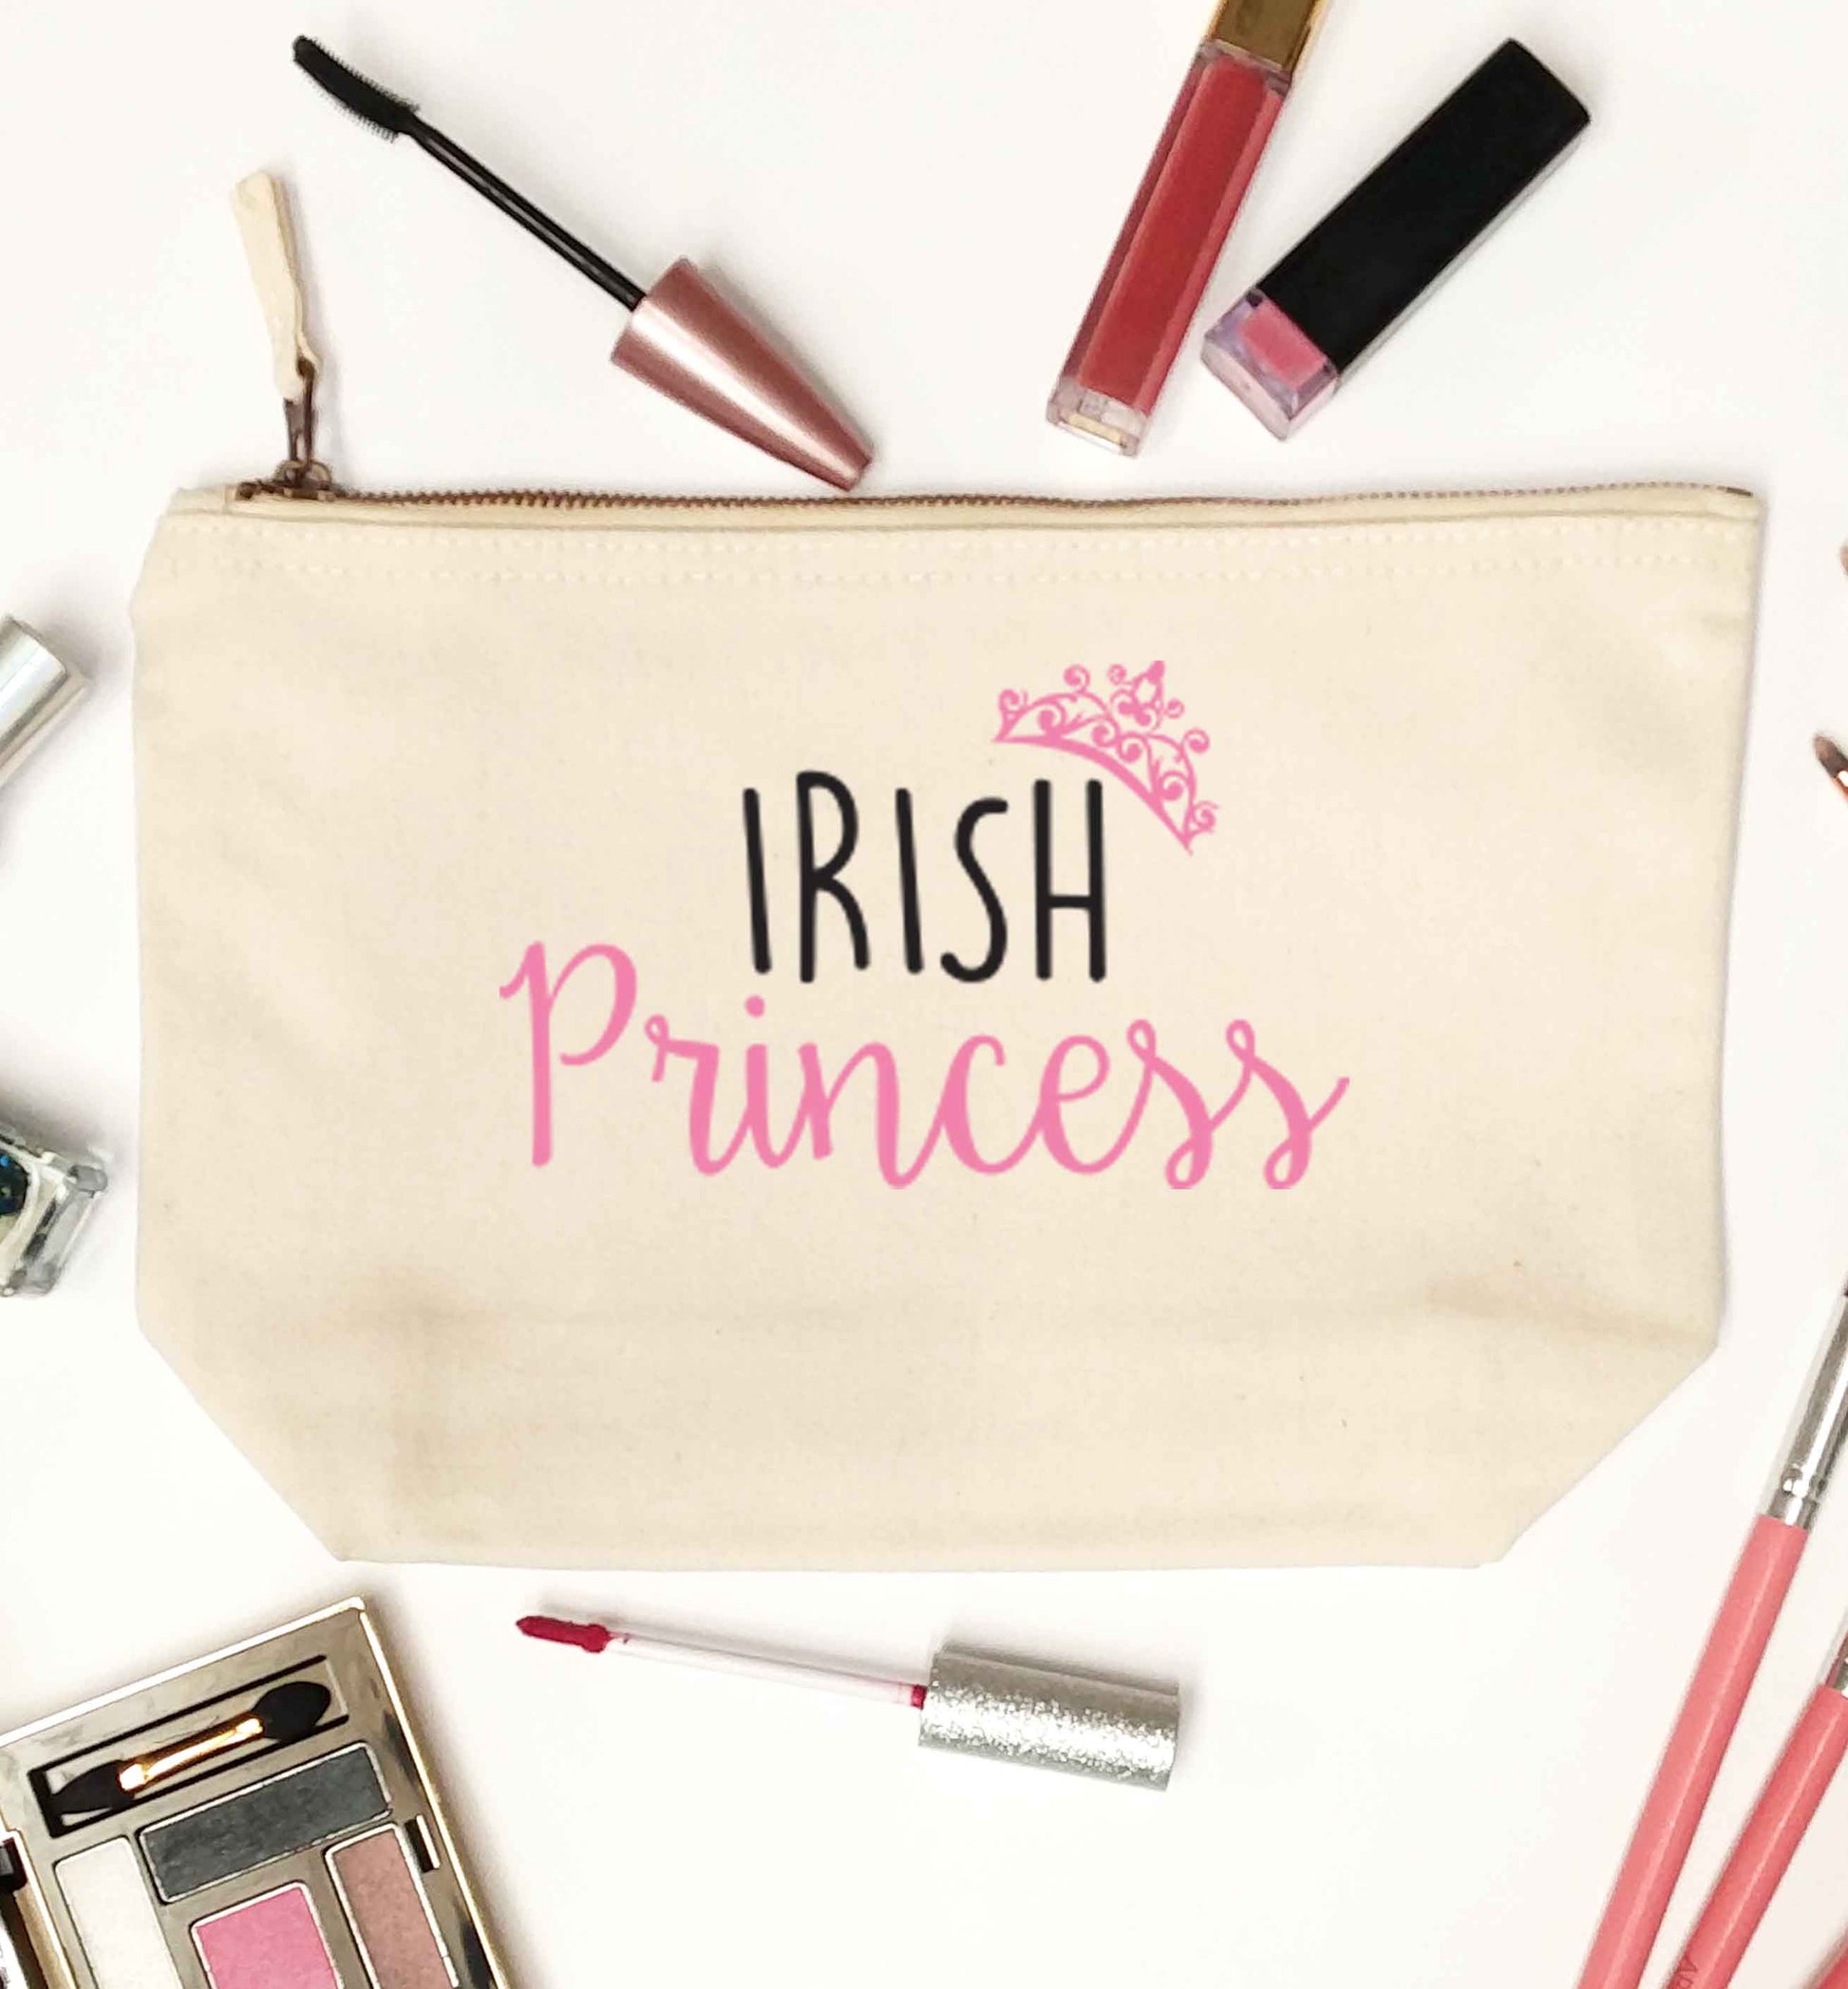 Irish princess natural makeup bag